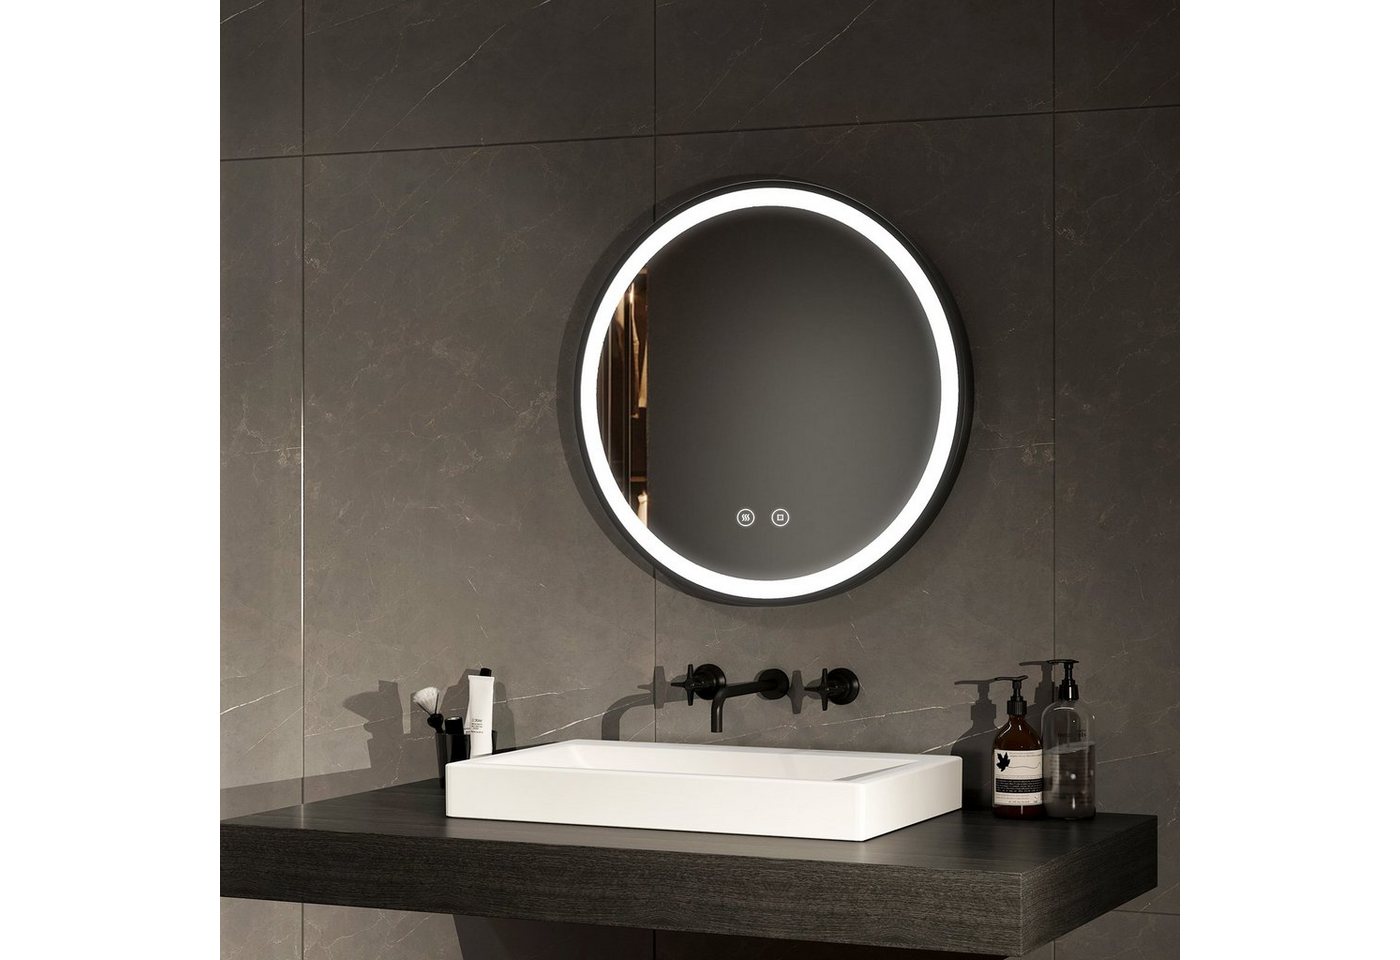 EMKE Badspiegel Rund Antibeschlage Badezimmerspiegel mit schwarzem Rahmen, 6500K, Helligkeit Einstellbar, Memory-Funktion Φ 50-80 cm von EMKE